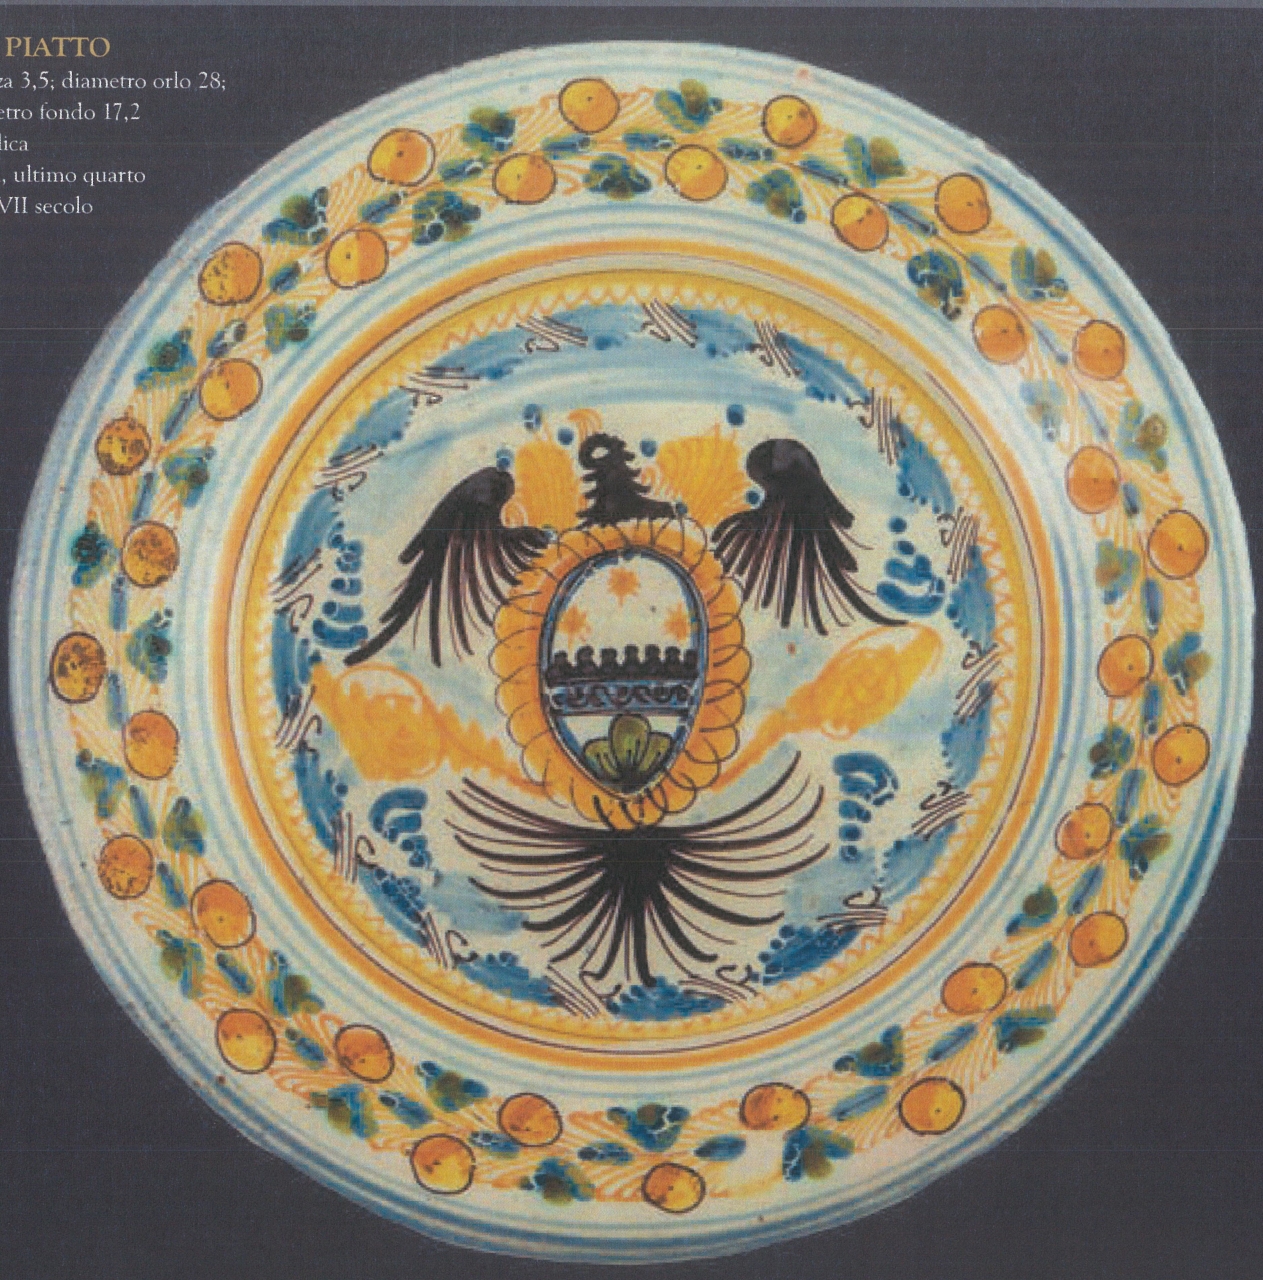 aquila araldica con motivi decorativi geometrici e vegetali (piatto, opera isolata) - bottega di Vietri (ultimo quarto XVII)